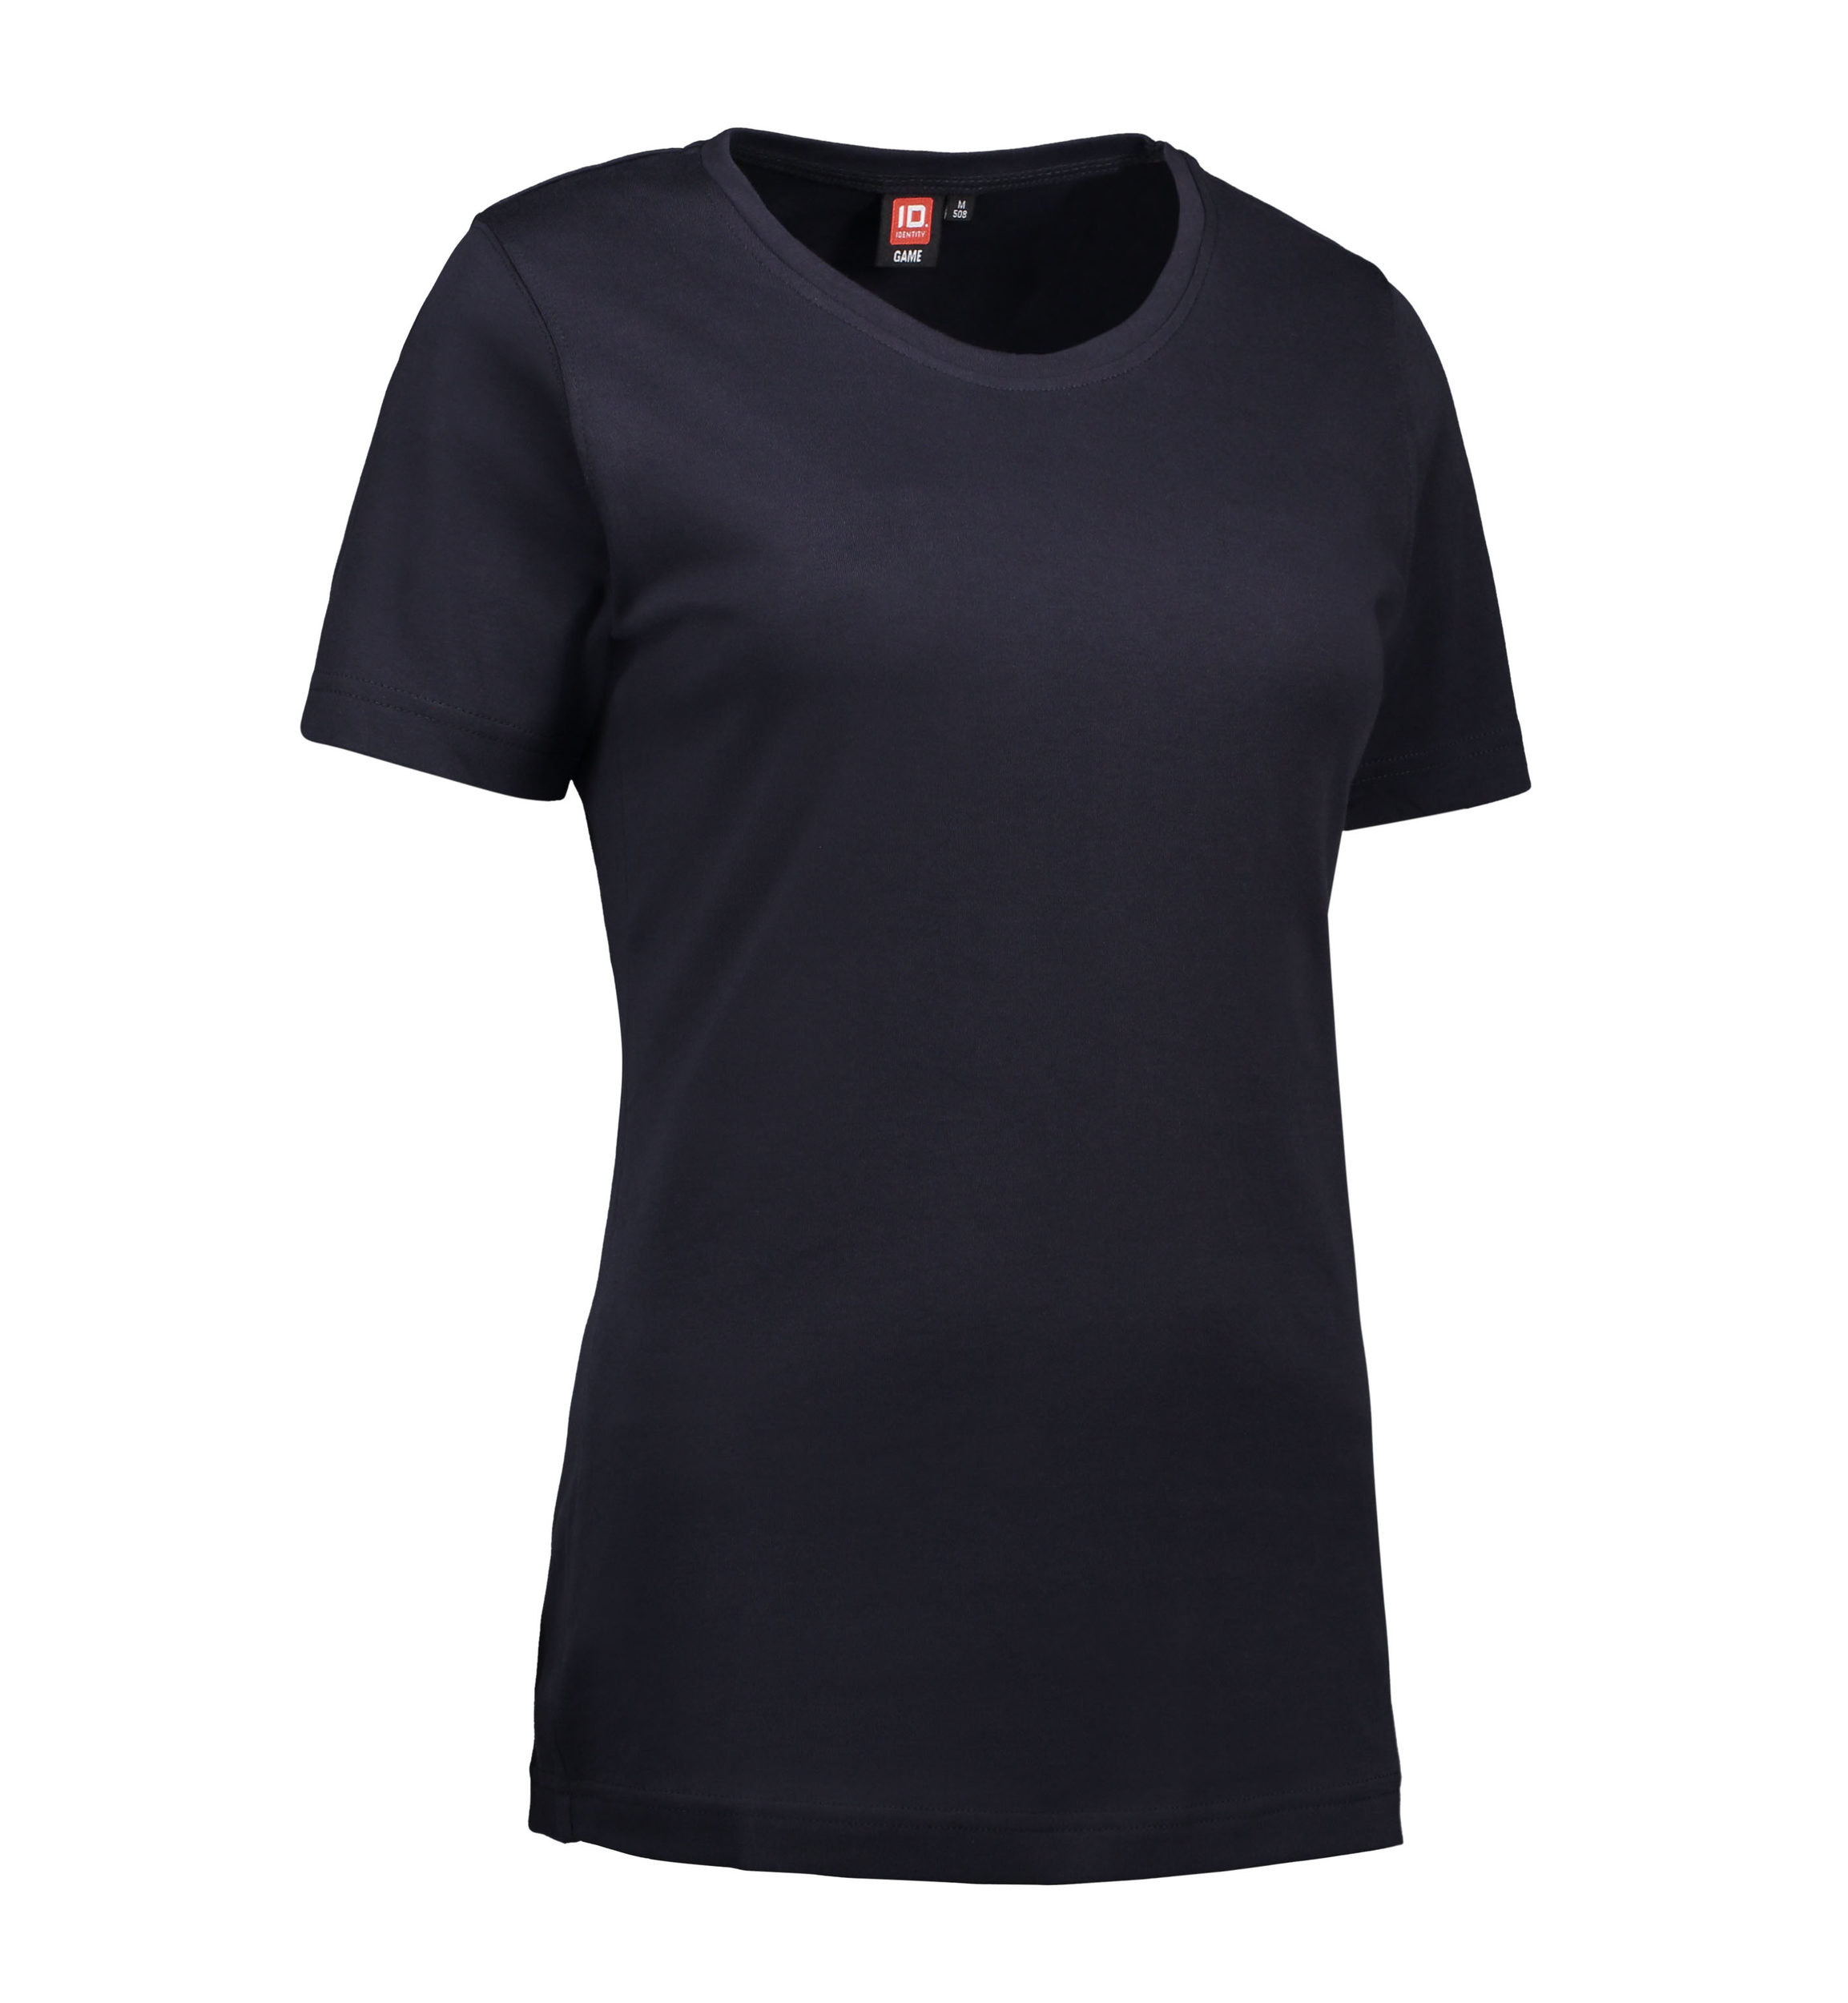 Billede af Navy t-shirt med rund hals til damer - XL hos Sygeplejebutikken.dk